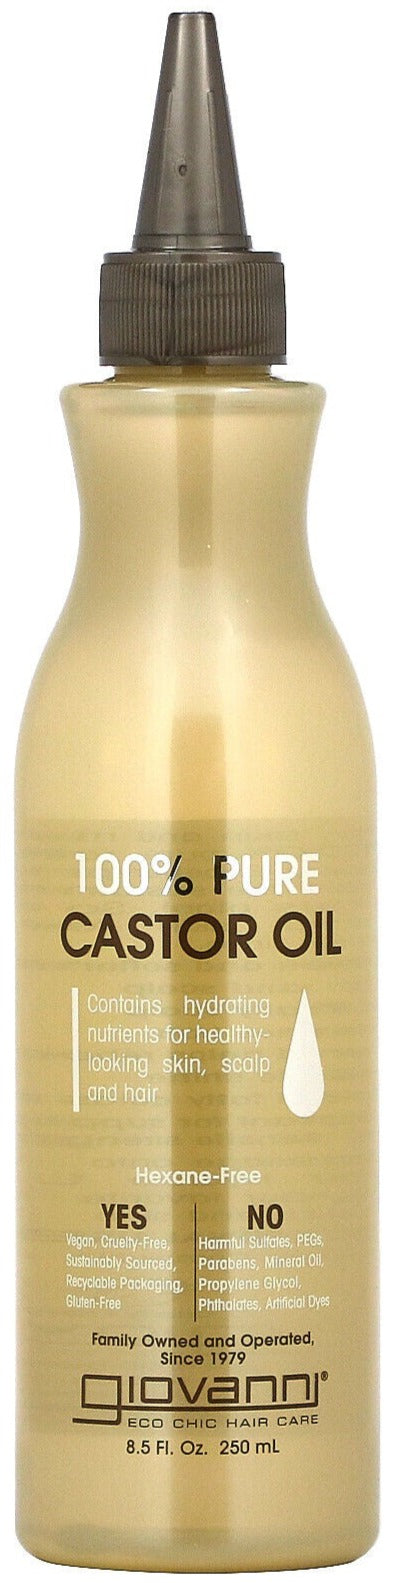 Giovanni 100% Pure Castor Oil 250ml - MeStore